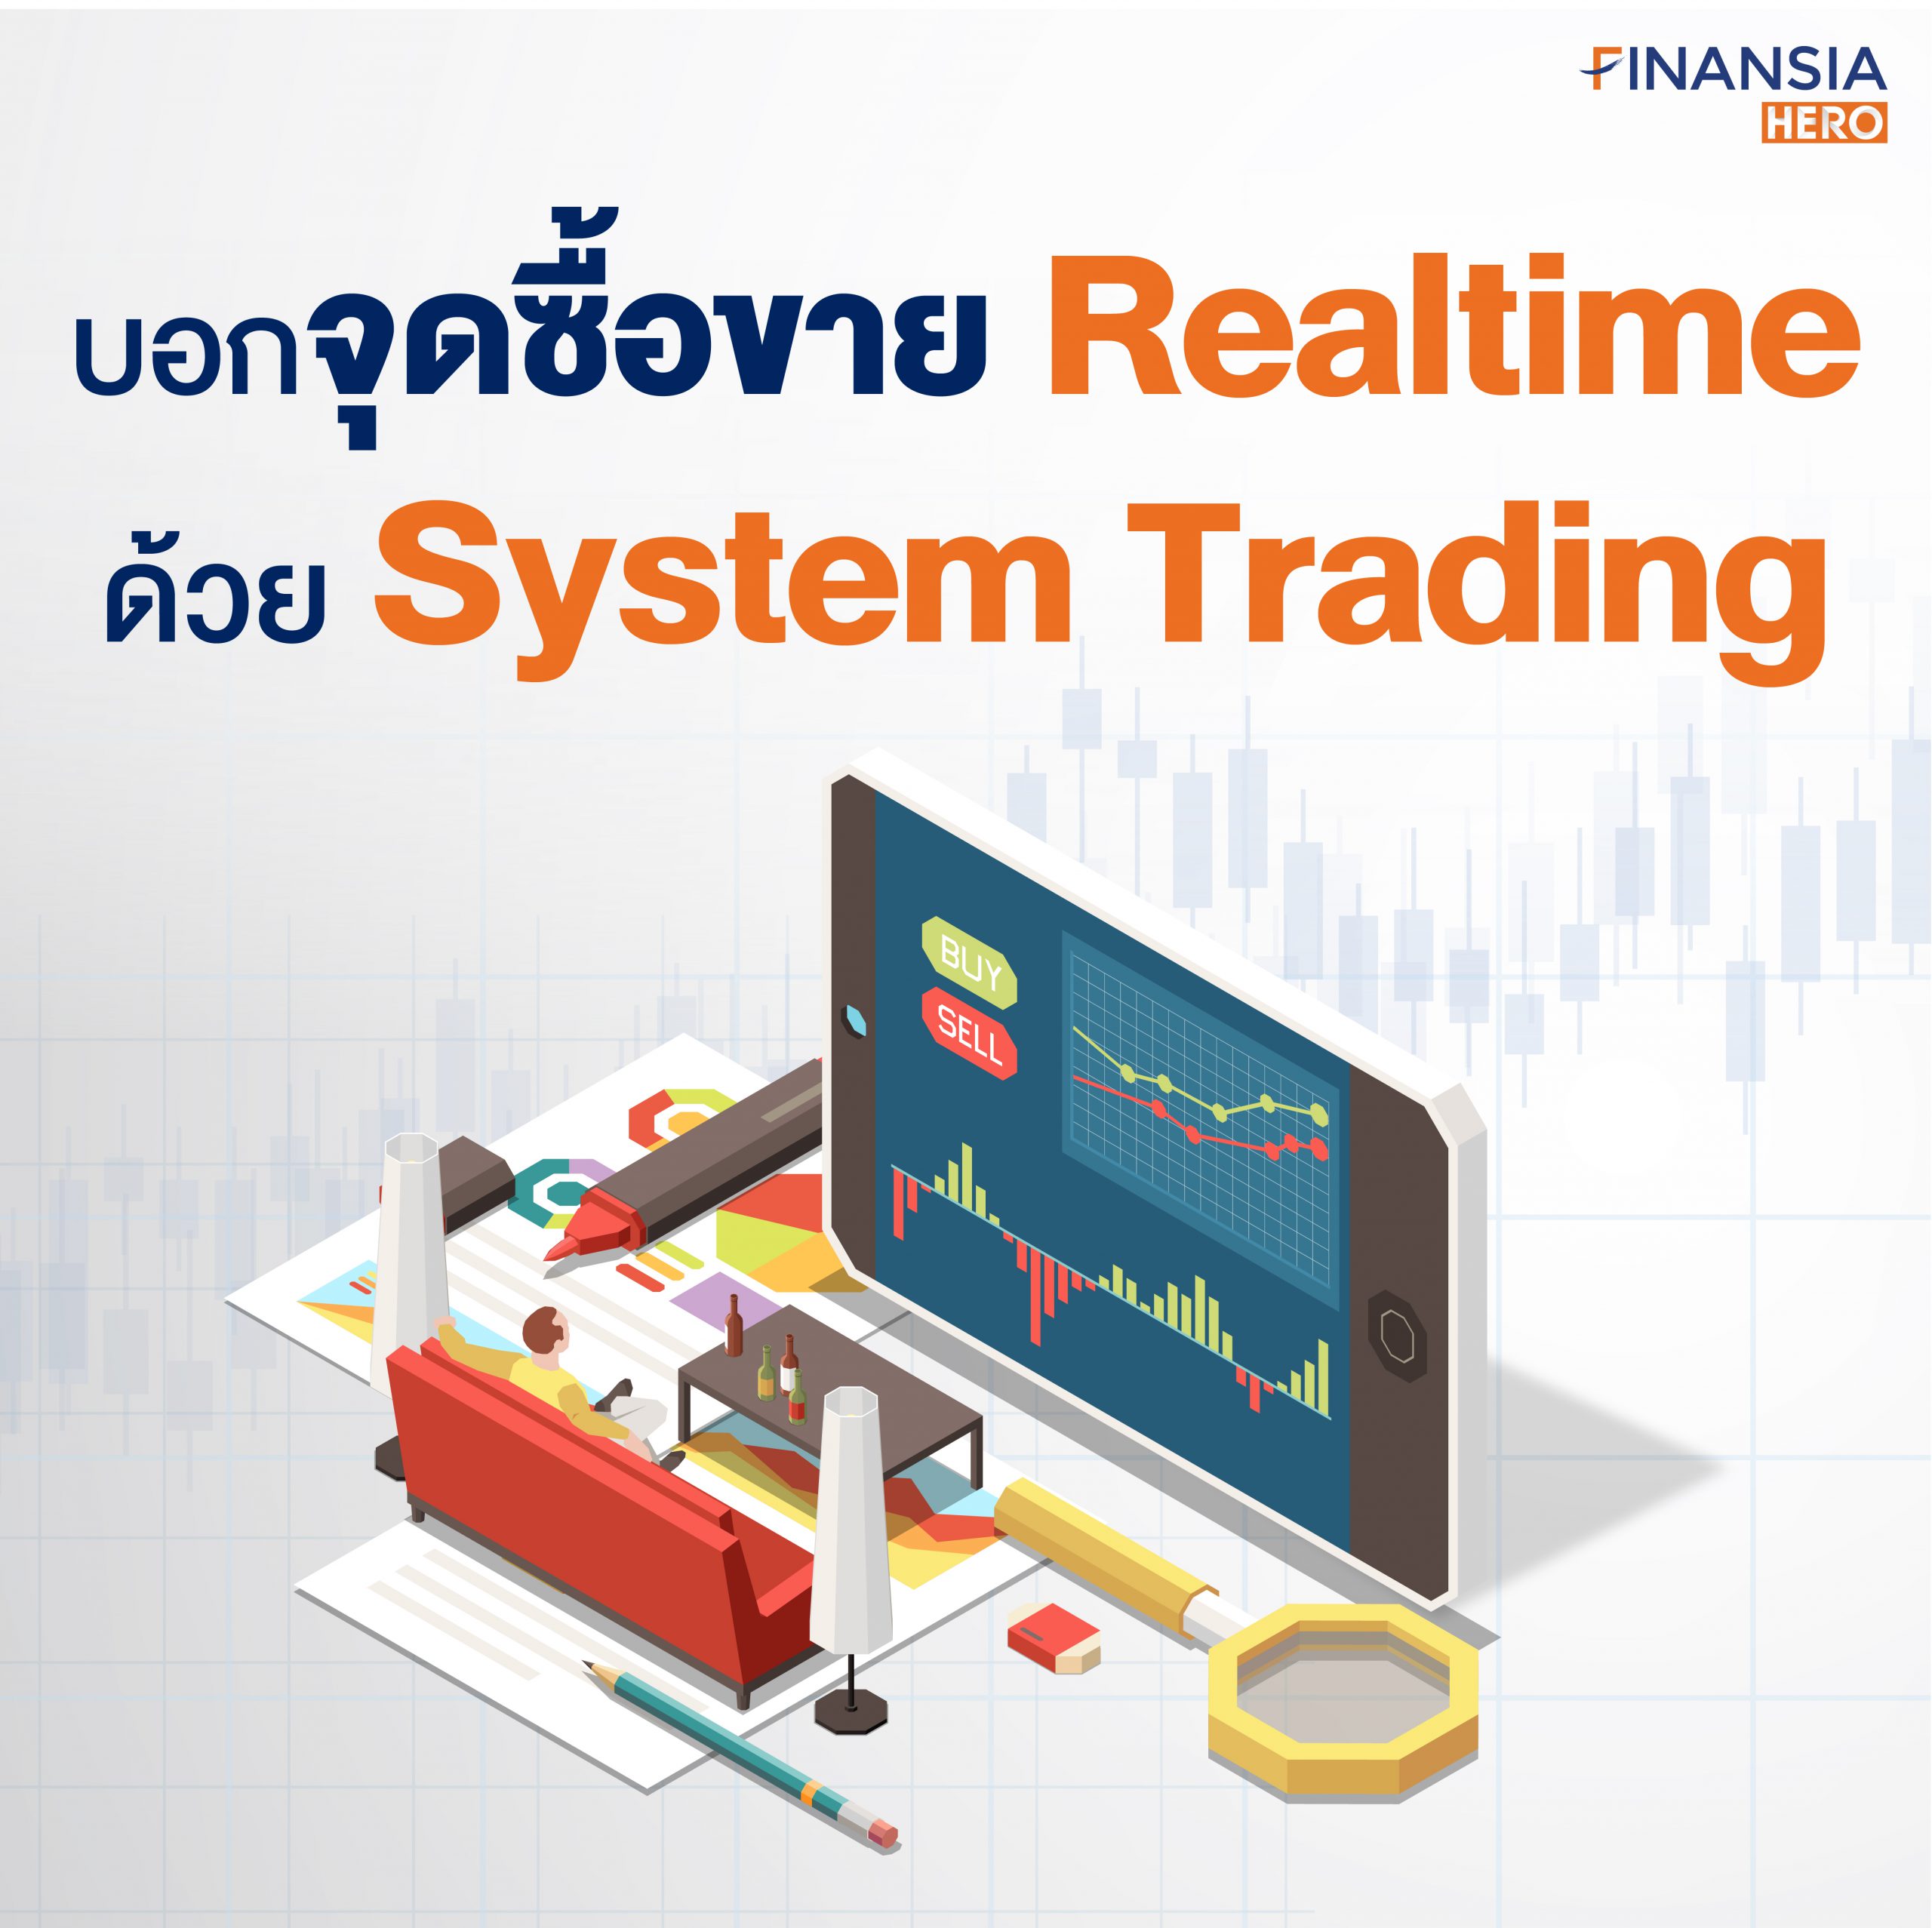 บอกจุดซื้อขาย Realtime ด้วยเครื่องมือเทรดหุ้น System Trading